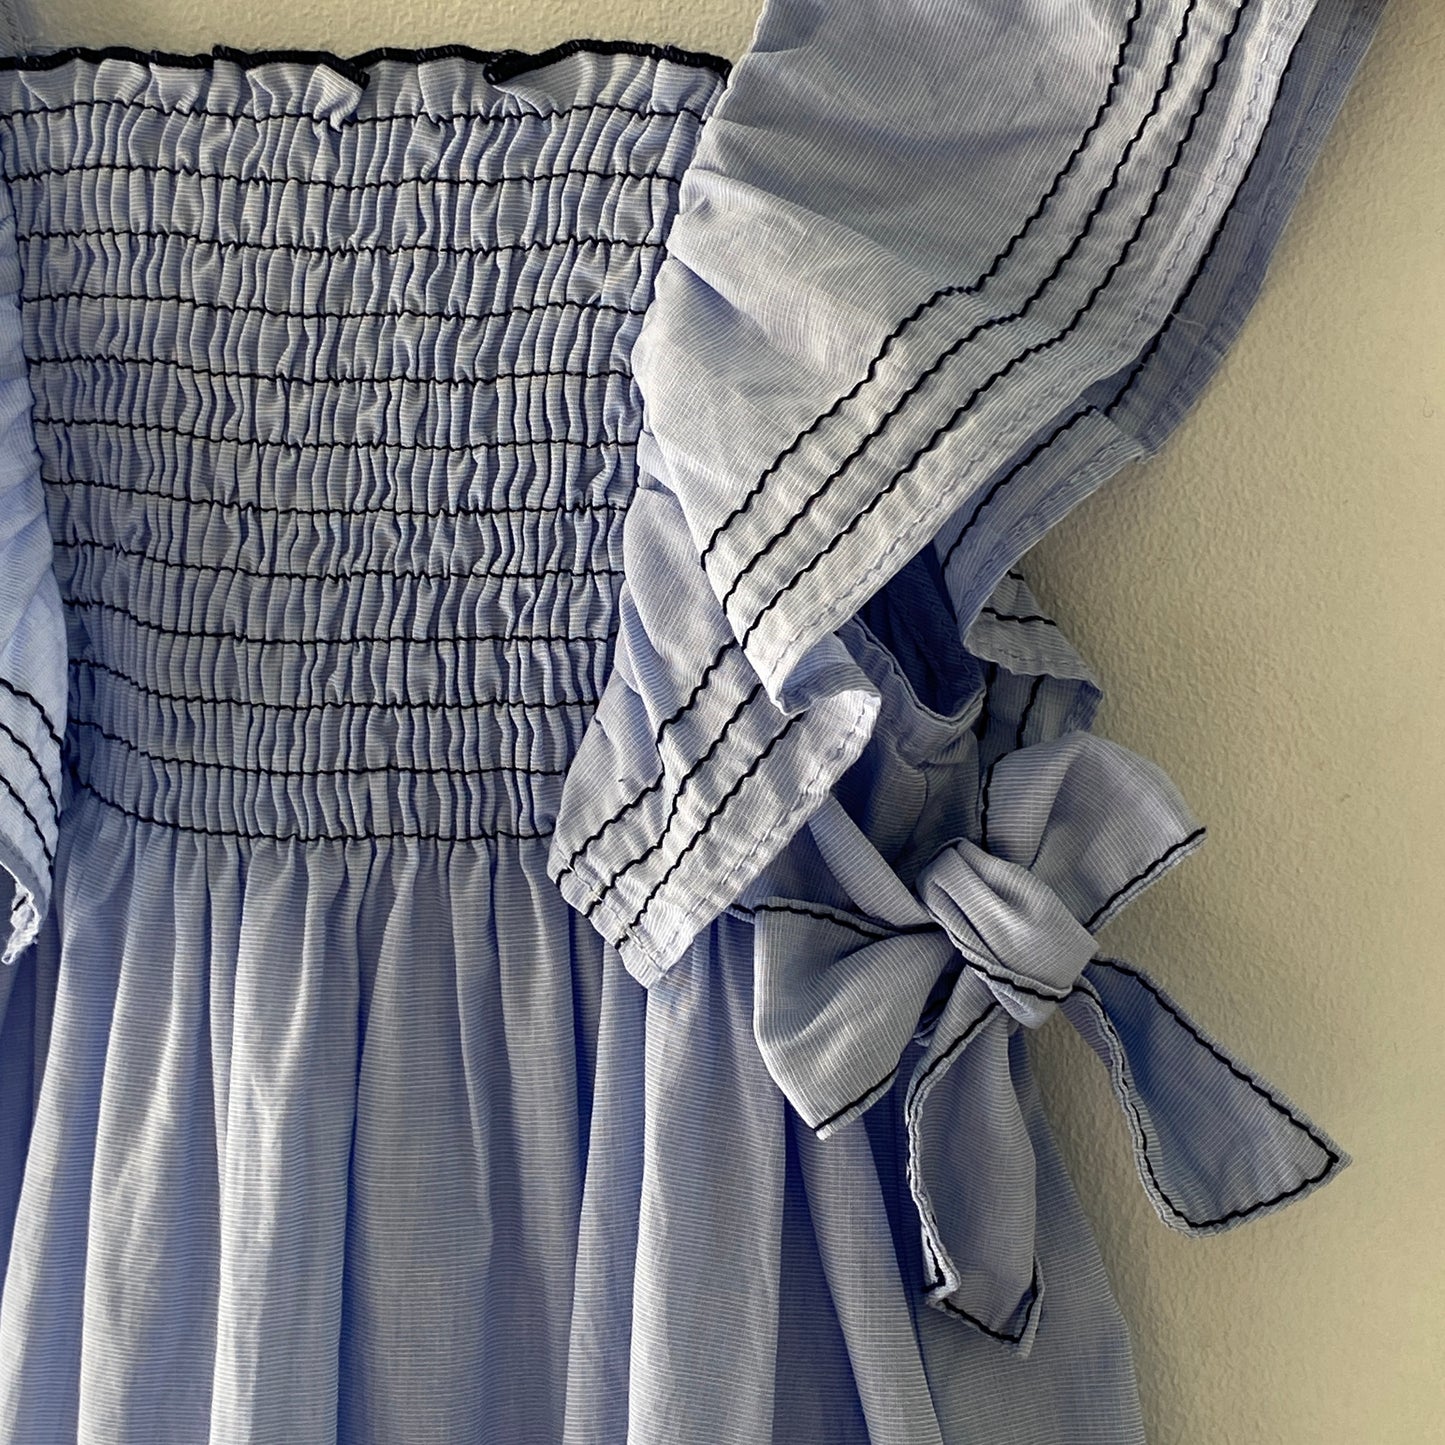 NWOT Powder Blue Smocked Button-Back Dress (18/24M)